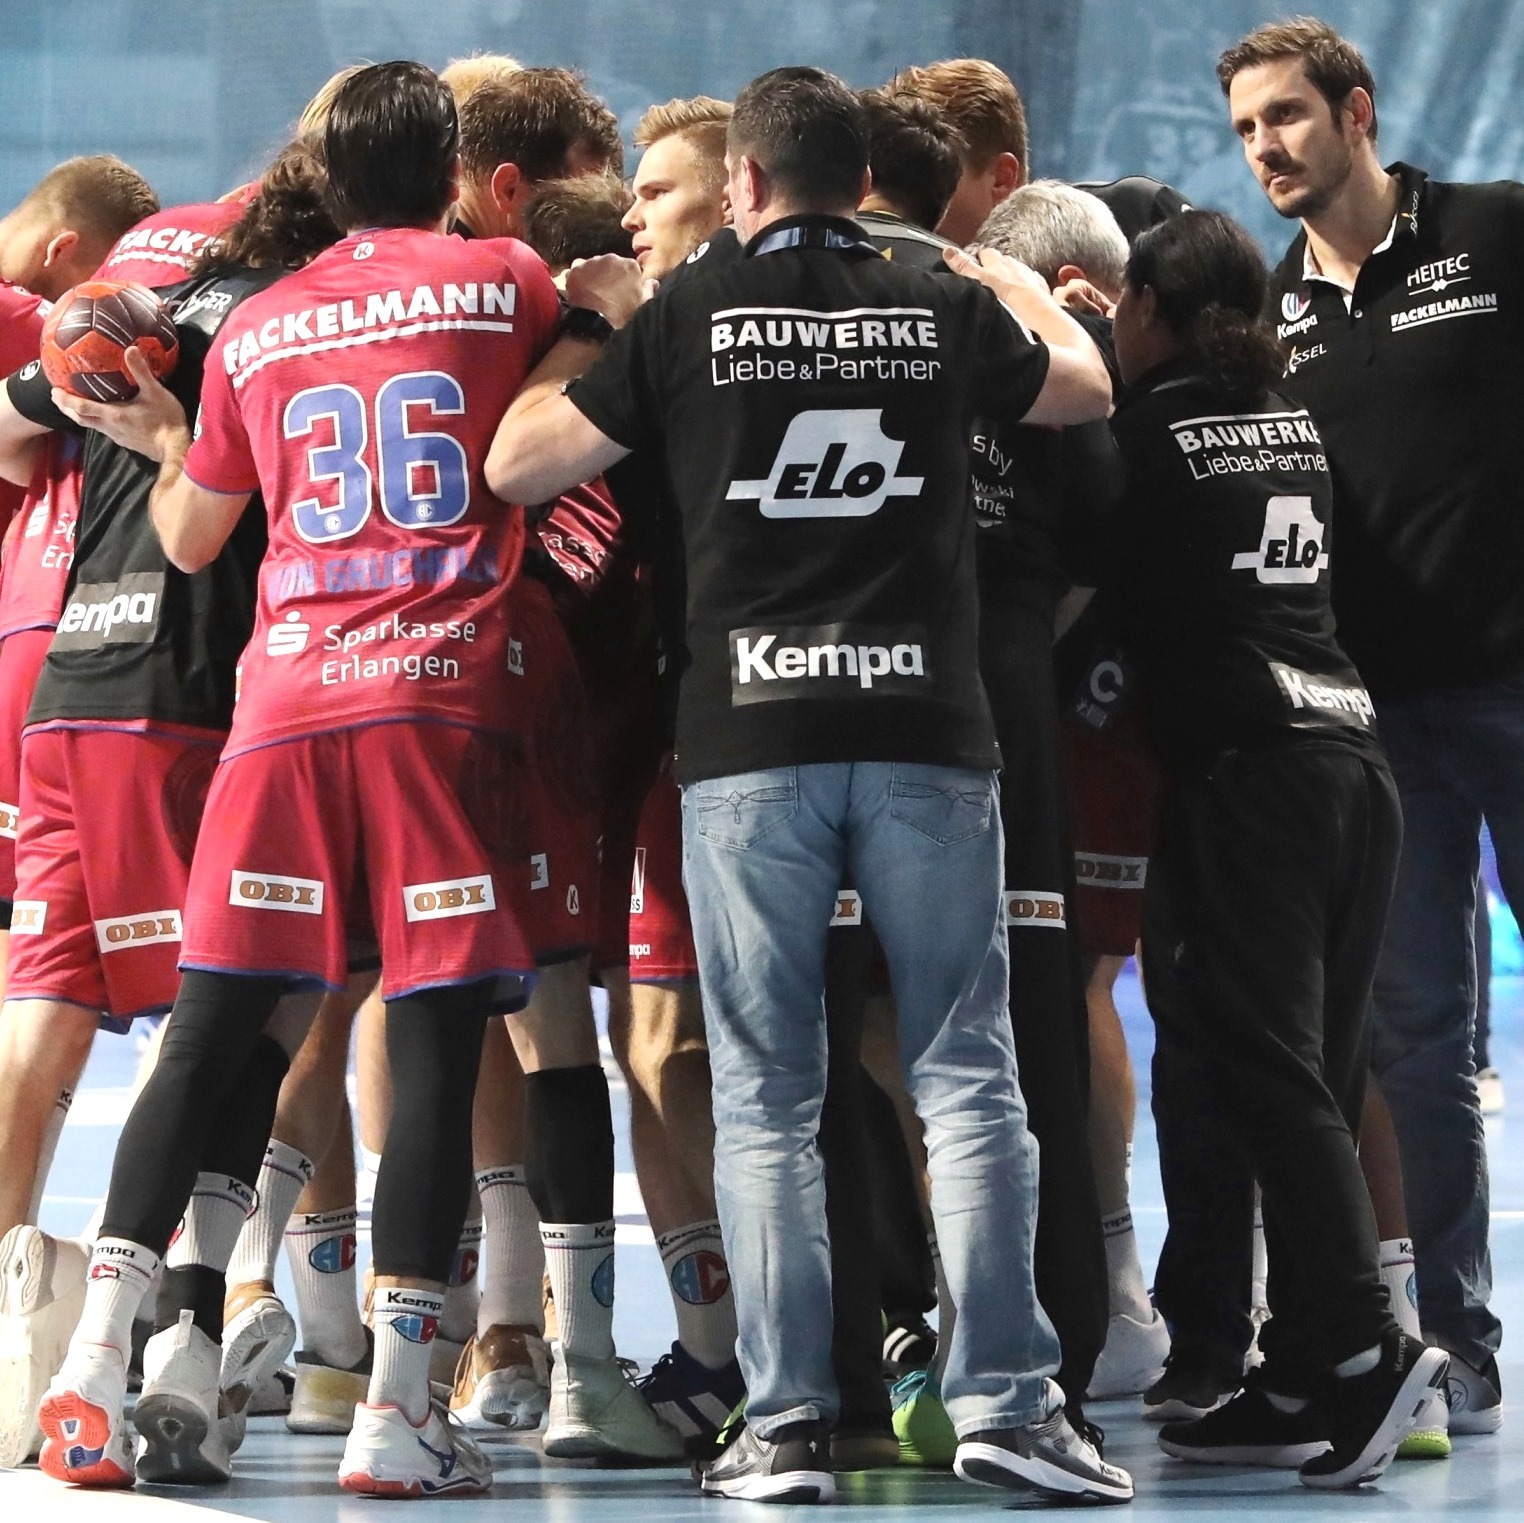 (#Jocki_Foto, Erlangen) - Handball-Bundesliga: Testspiele für den HC Erlangen terminiert